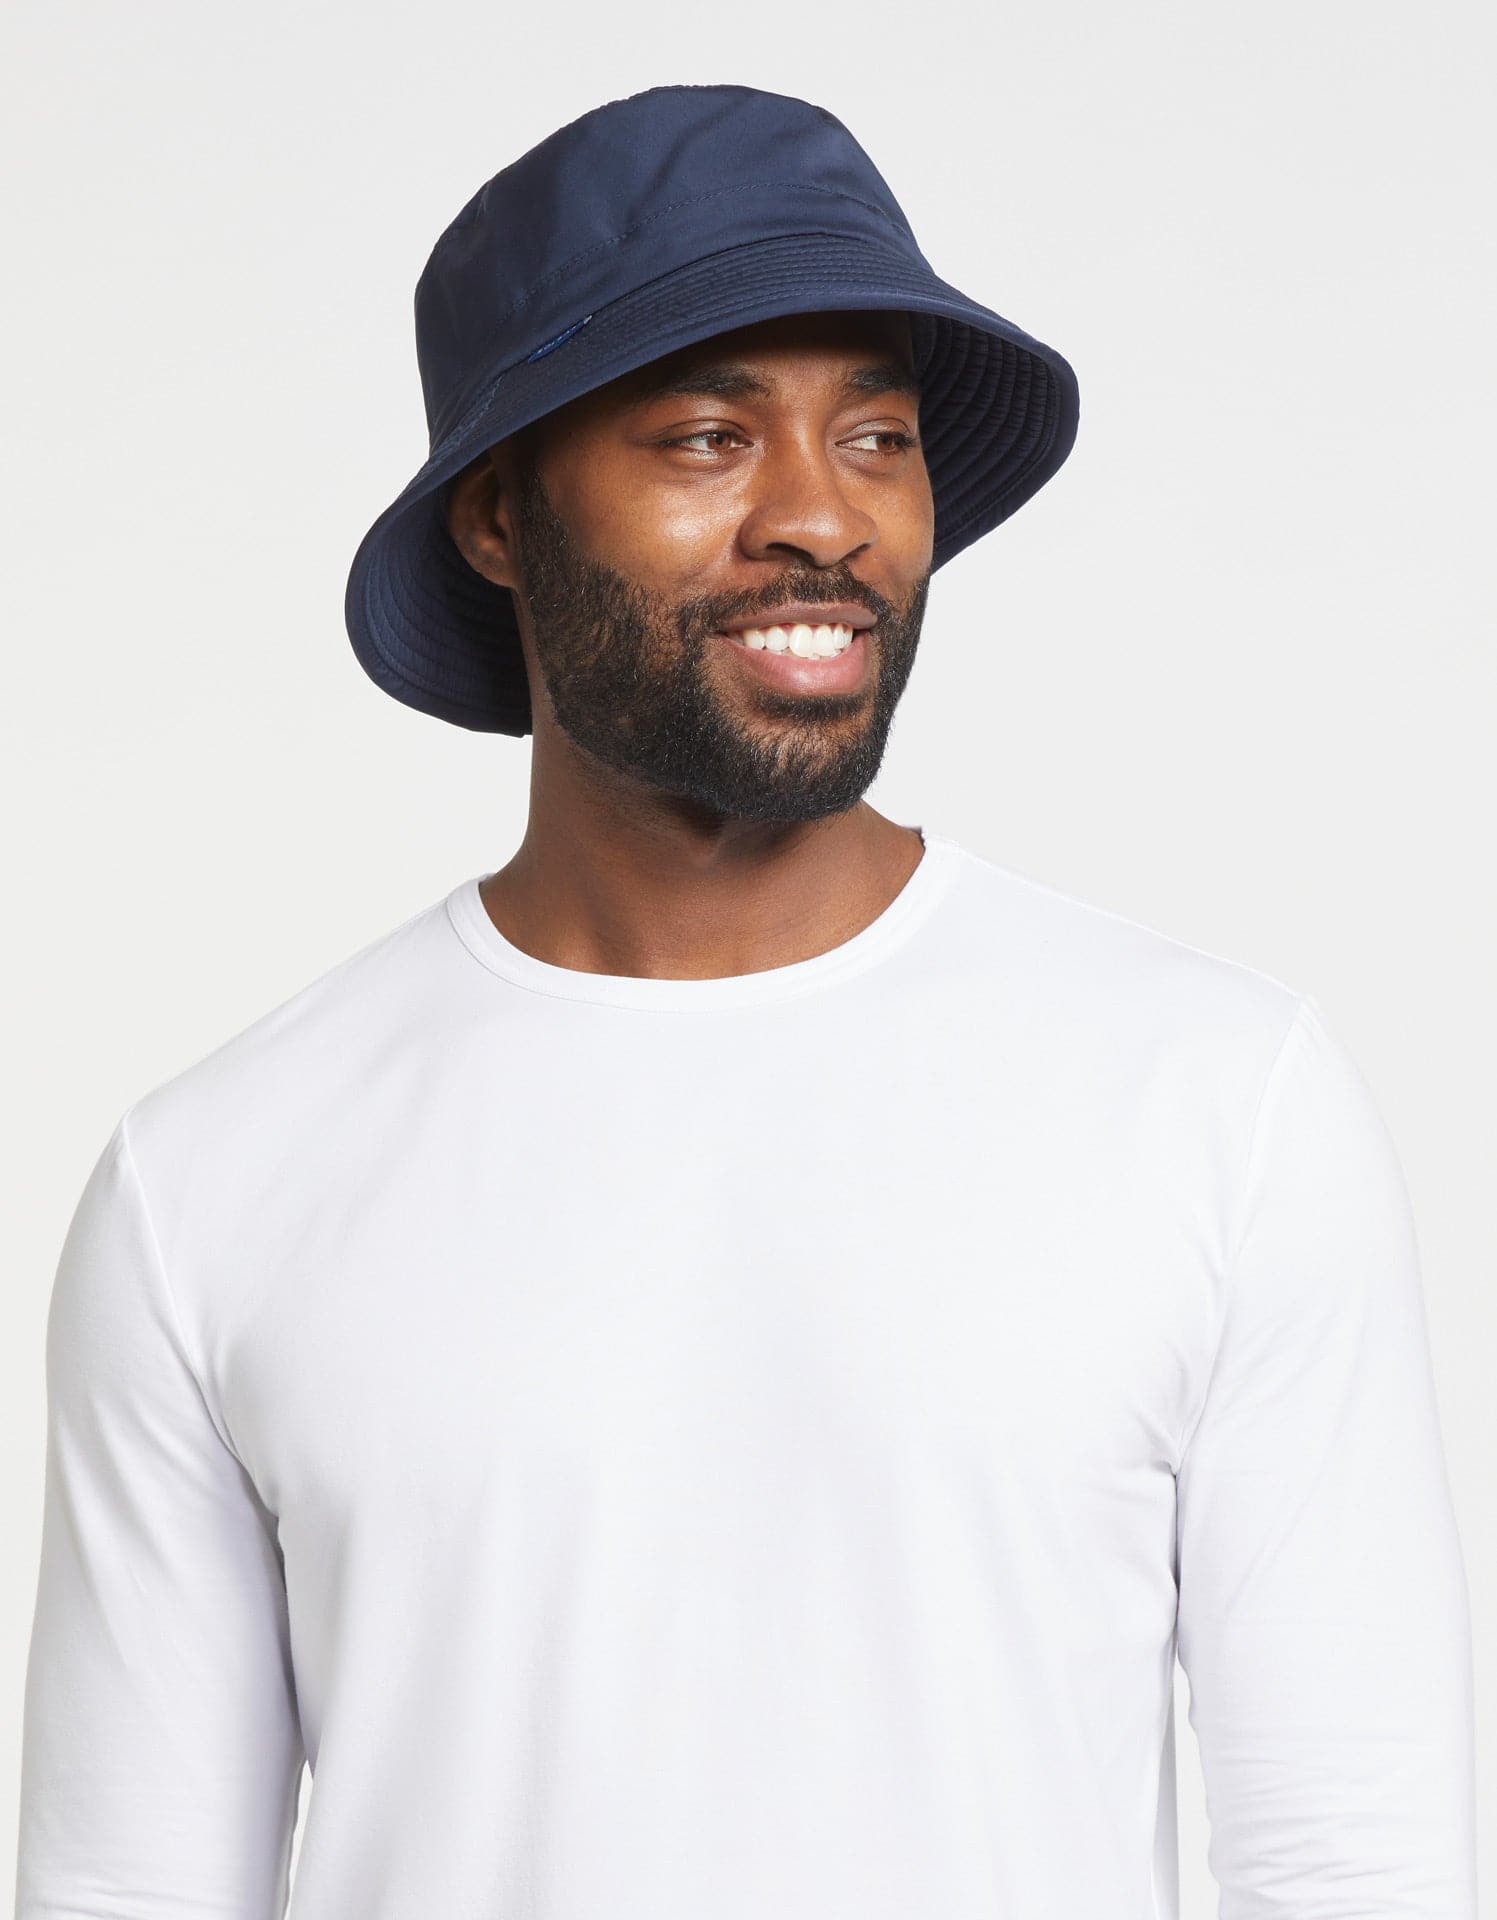 Go-To Bucket Sun Hat For Men UPF50+, Men's Sun Hat